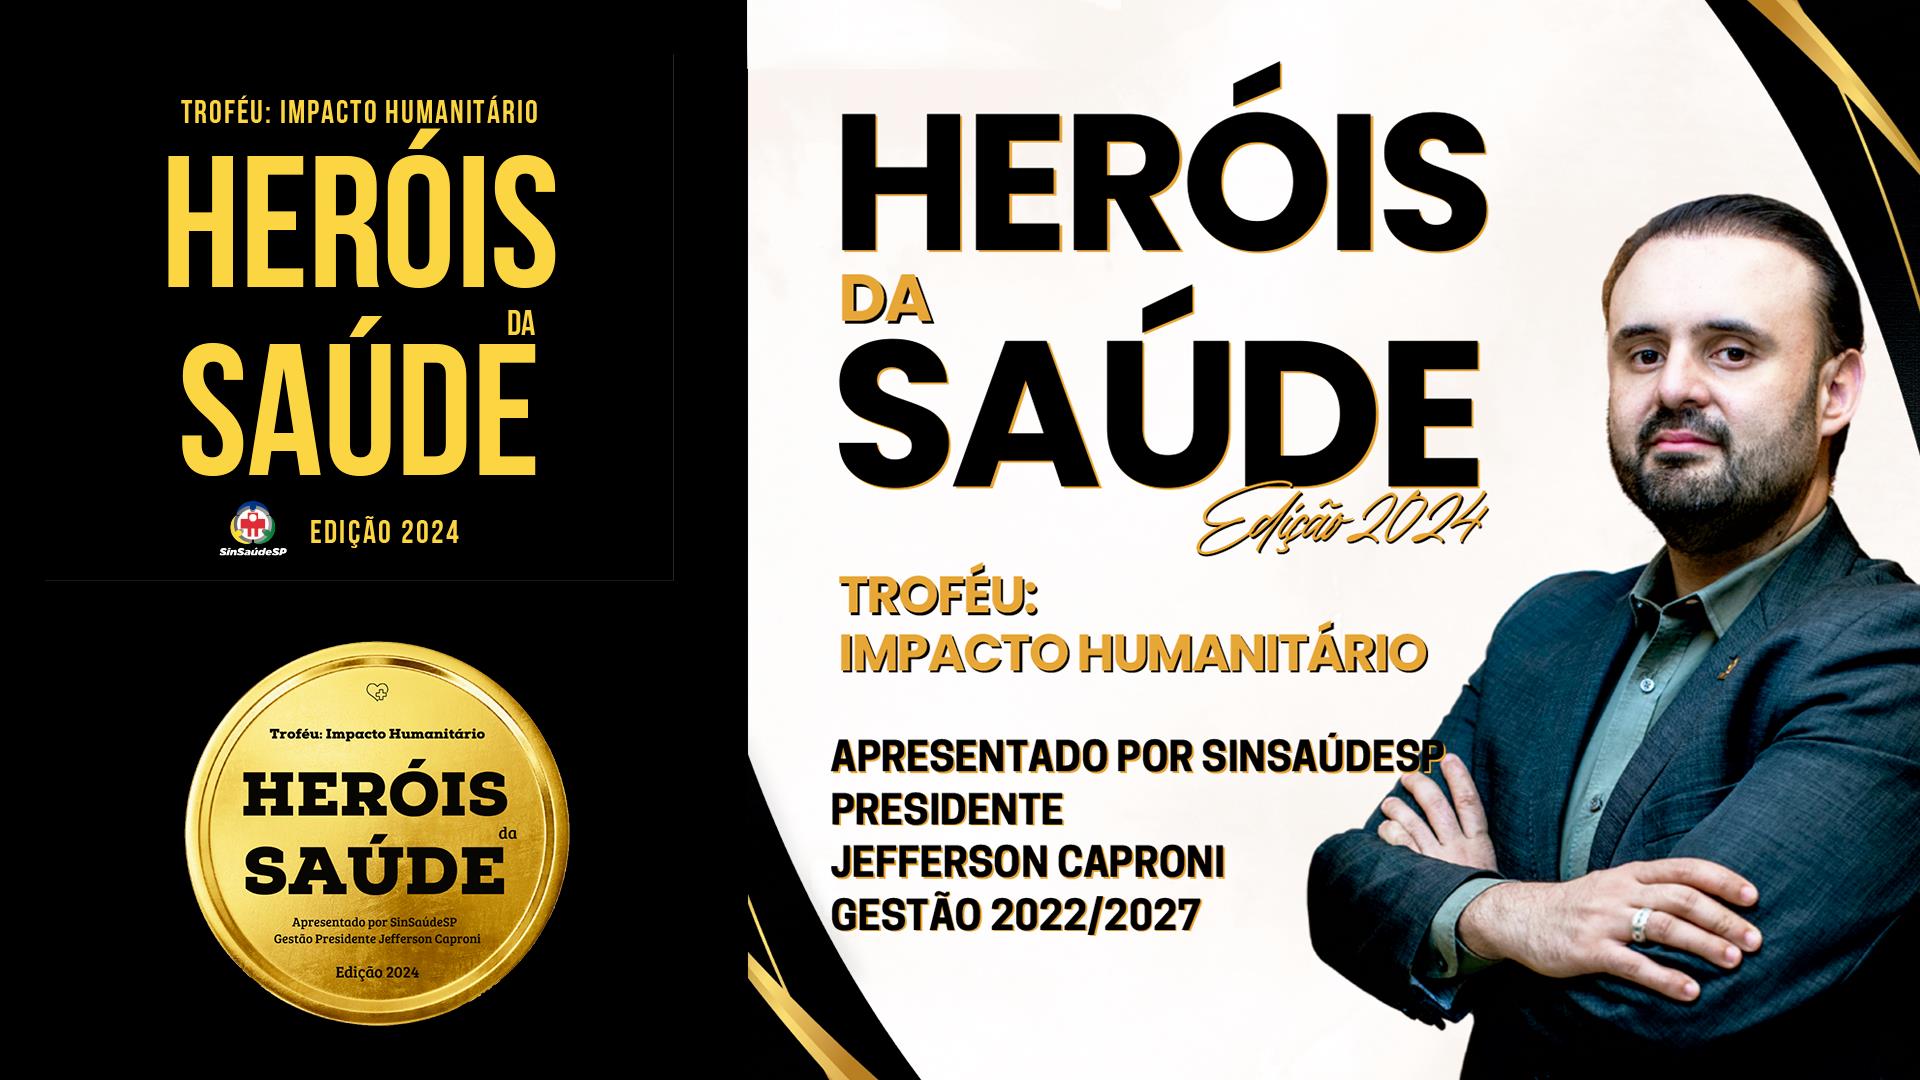 Heróis da Saúde Edição 2024 - Troféu: Impacto Humanitário